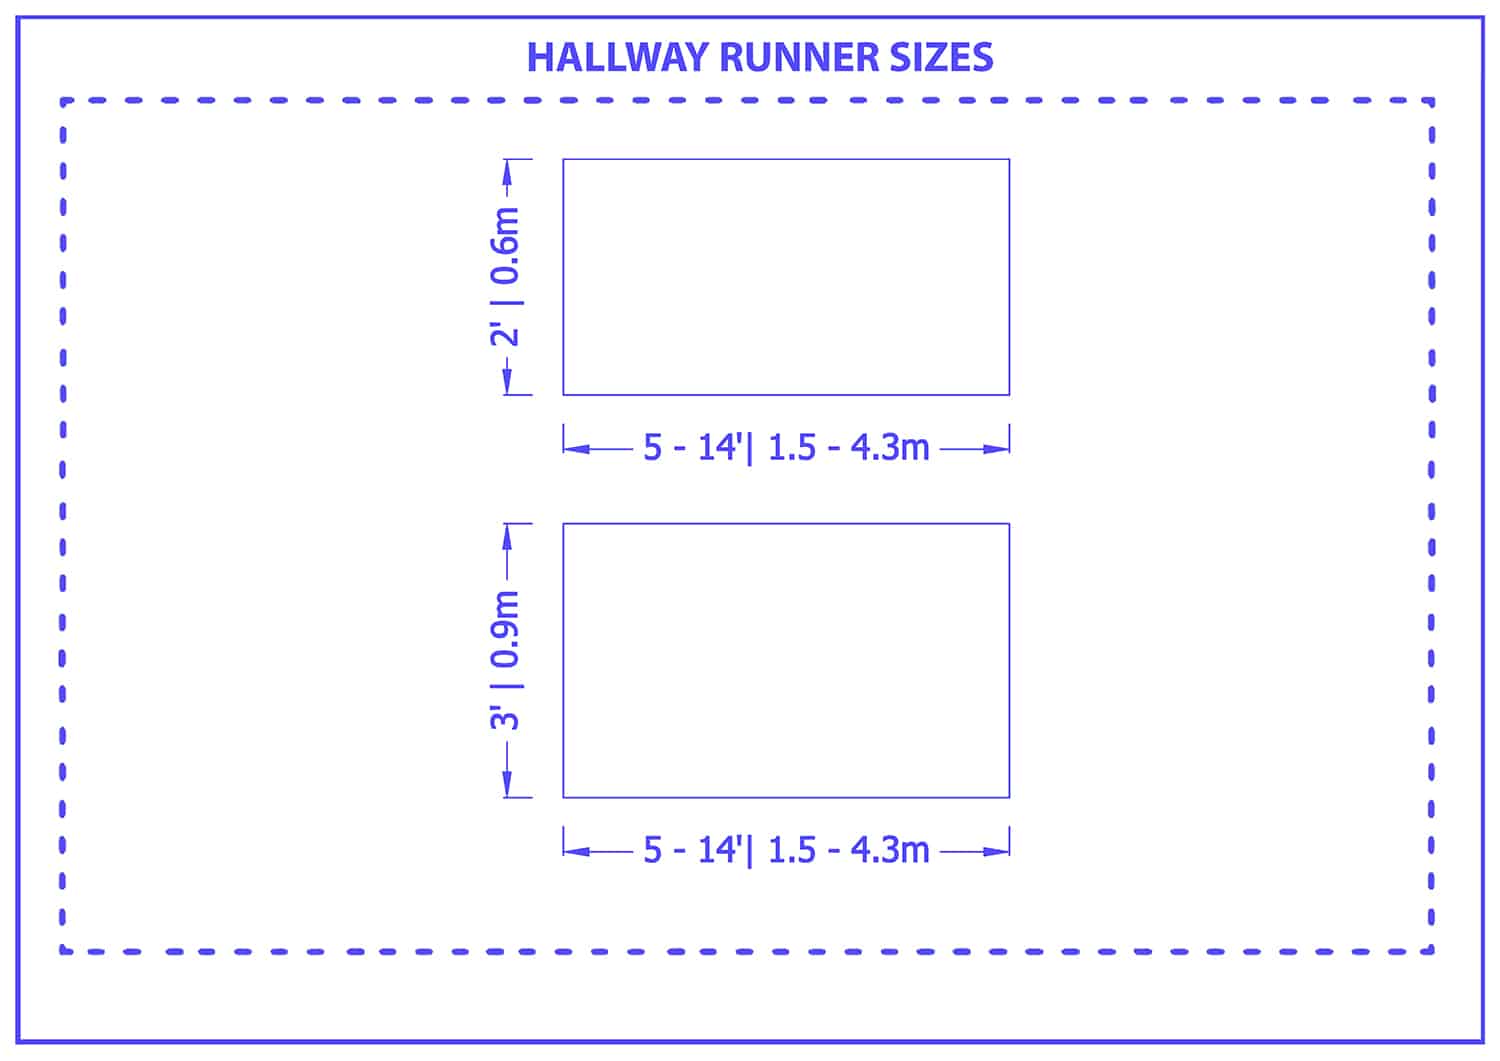 Hallway runner sizes